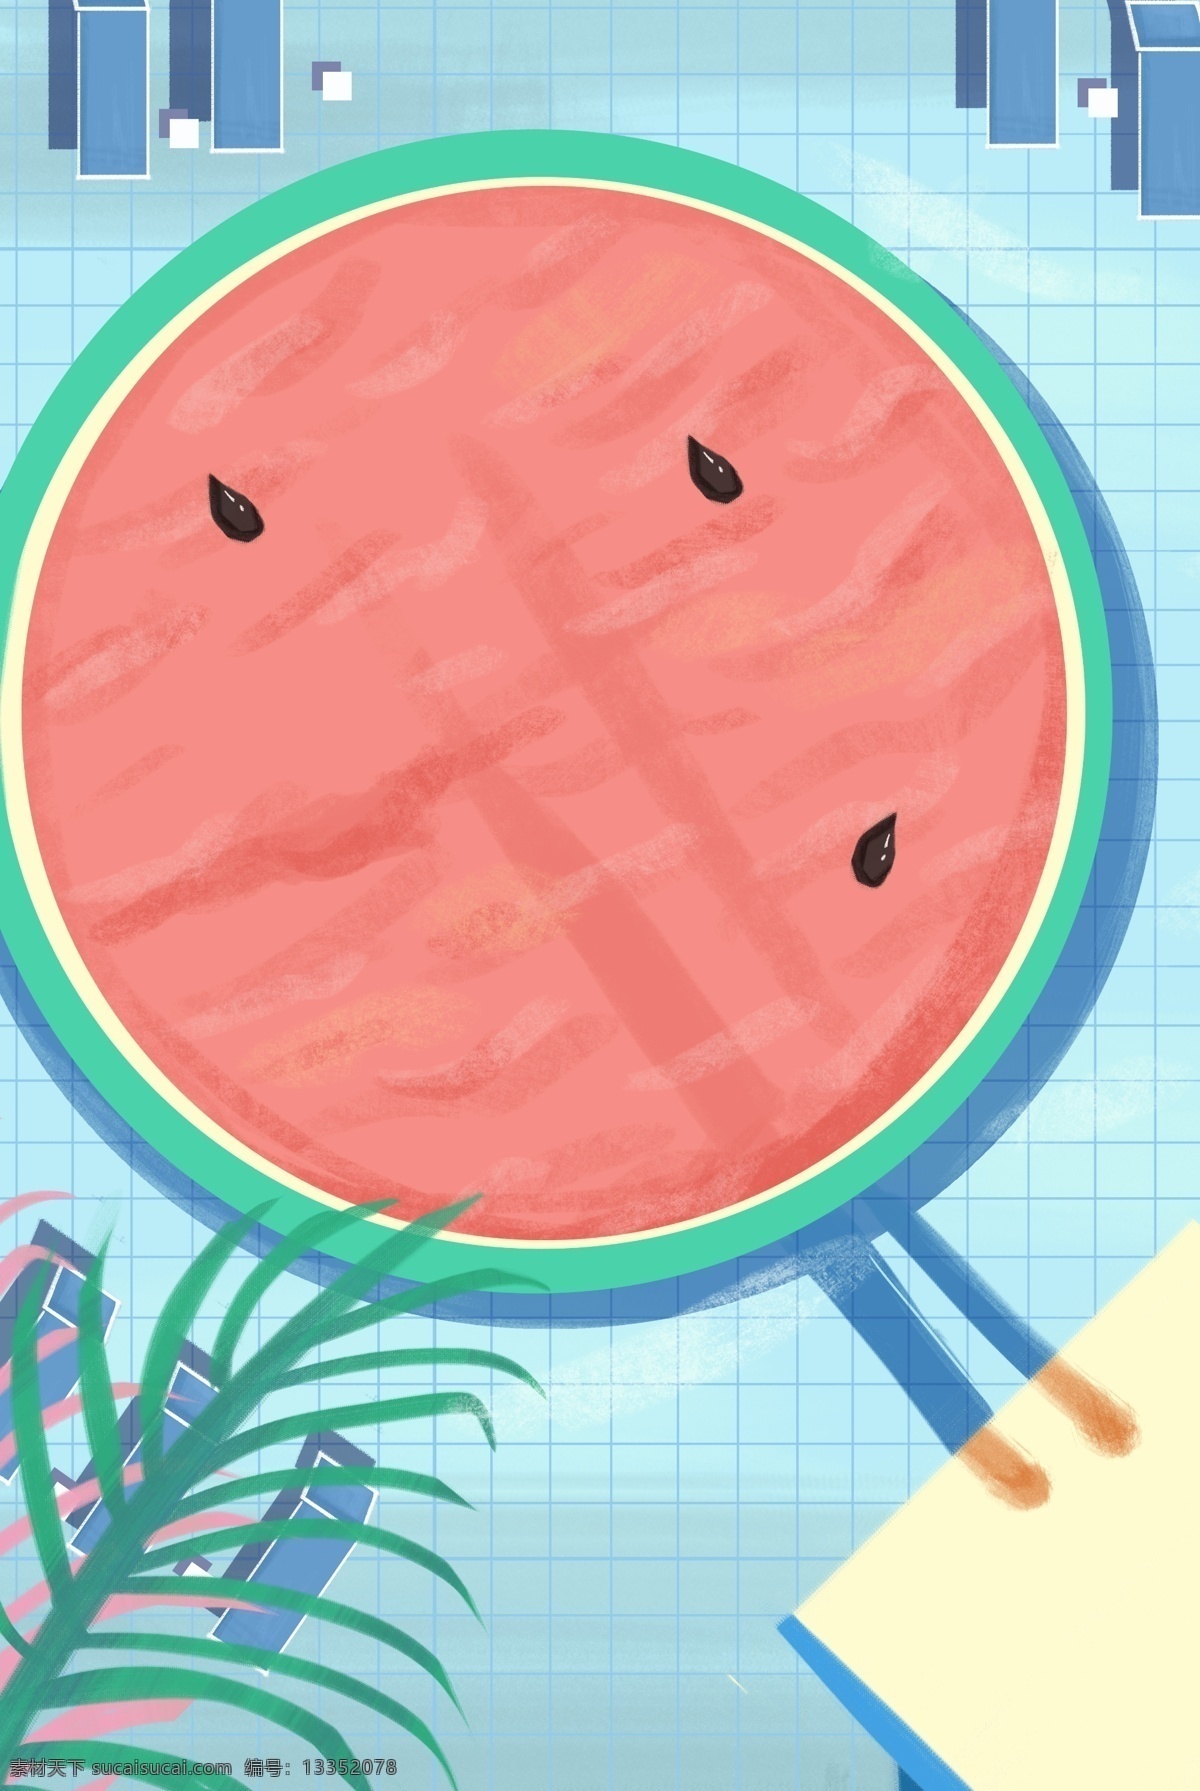 创意 西瓜 游泳池 背景 海报 水果 夏天 夏季 炎热